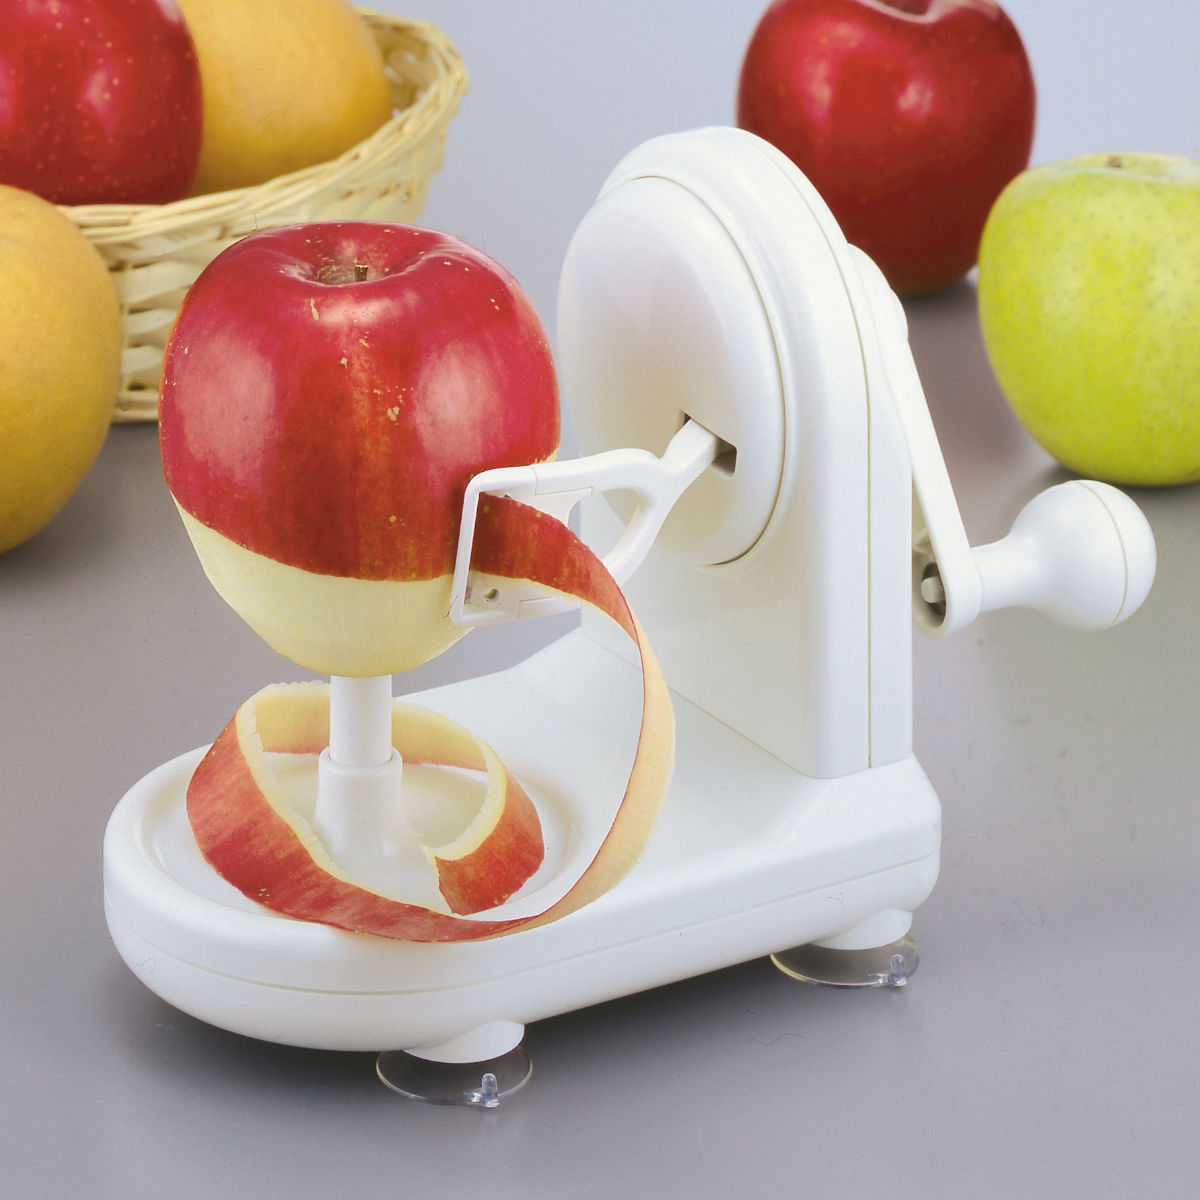 りんごの皮むきがあっという間にラクラク りんご 割引も実施中 皮むき器 便利グッズ キッチン アップルピーラー 回転式ピーラー ピーラー 皮剥き器 セール特価 回転式 リンゴ 果物用 なし アップル 39ショップ ナシ フルーツ用 下ごしらえ 林檎 キッチンツール 梨 時短